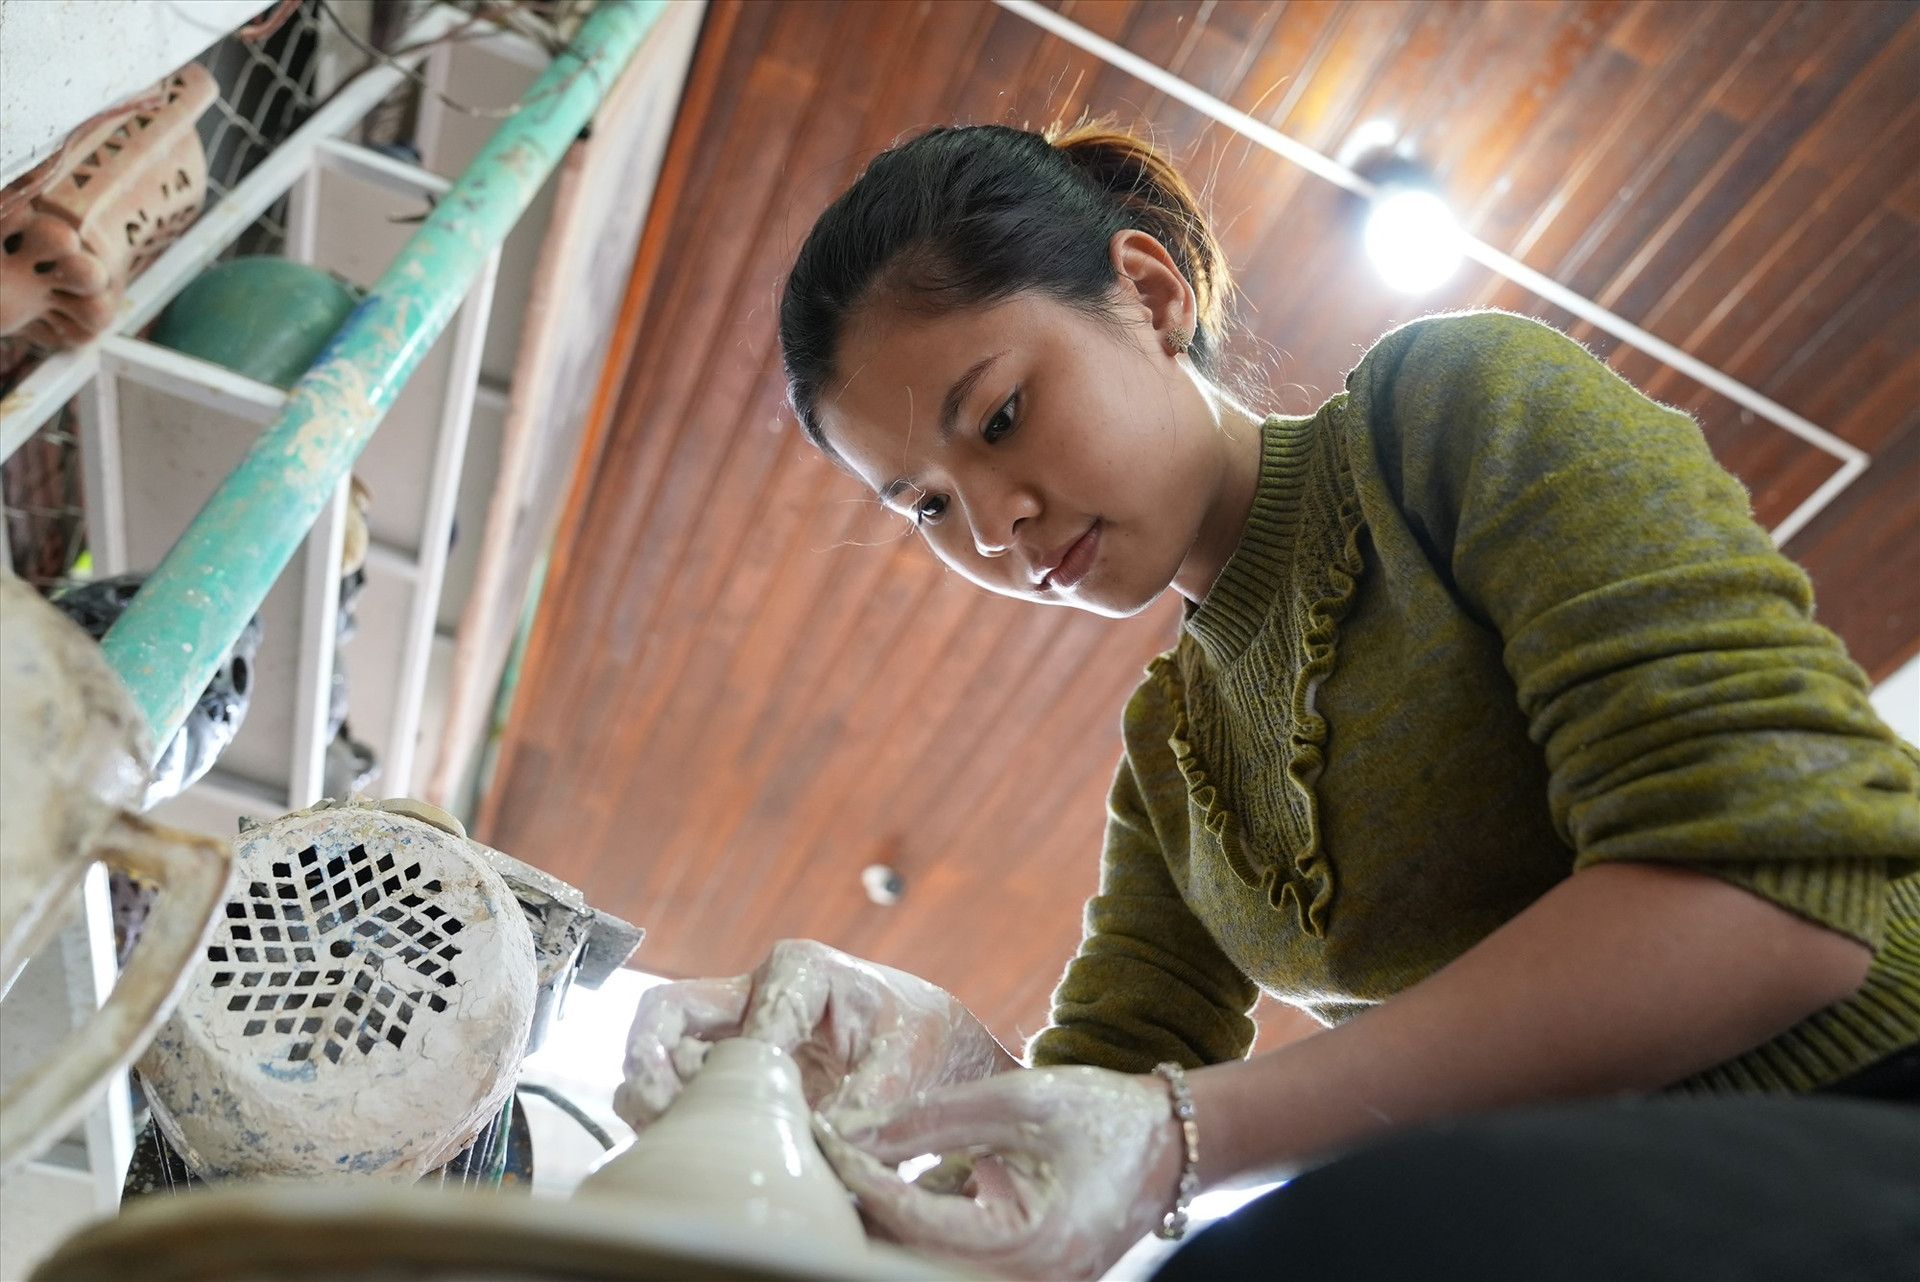 Qua đôi tay khéo léo của người làng Thanh Hà, mỗi sản phẩm gốm được làm ra sẽ trở thành một tác phẩm nghệ thuật độc đáo, duy nhất. Ảnh: Đ.T